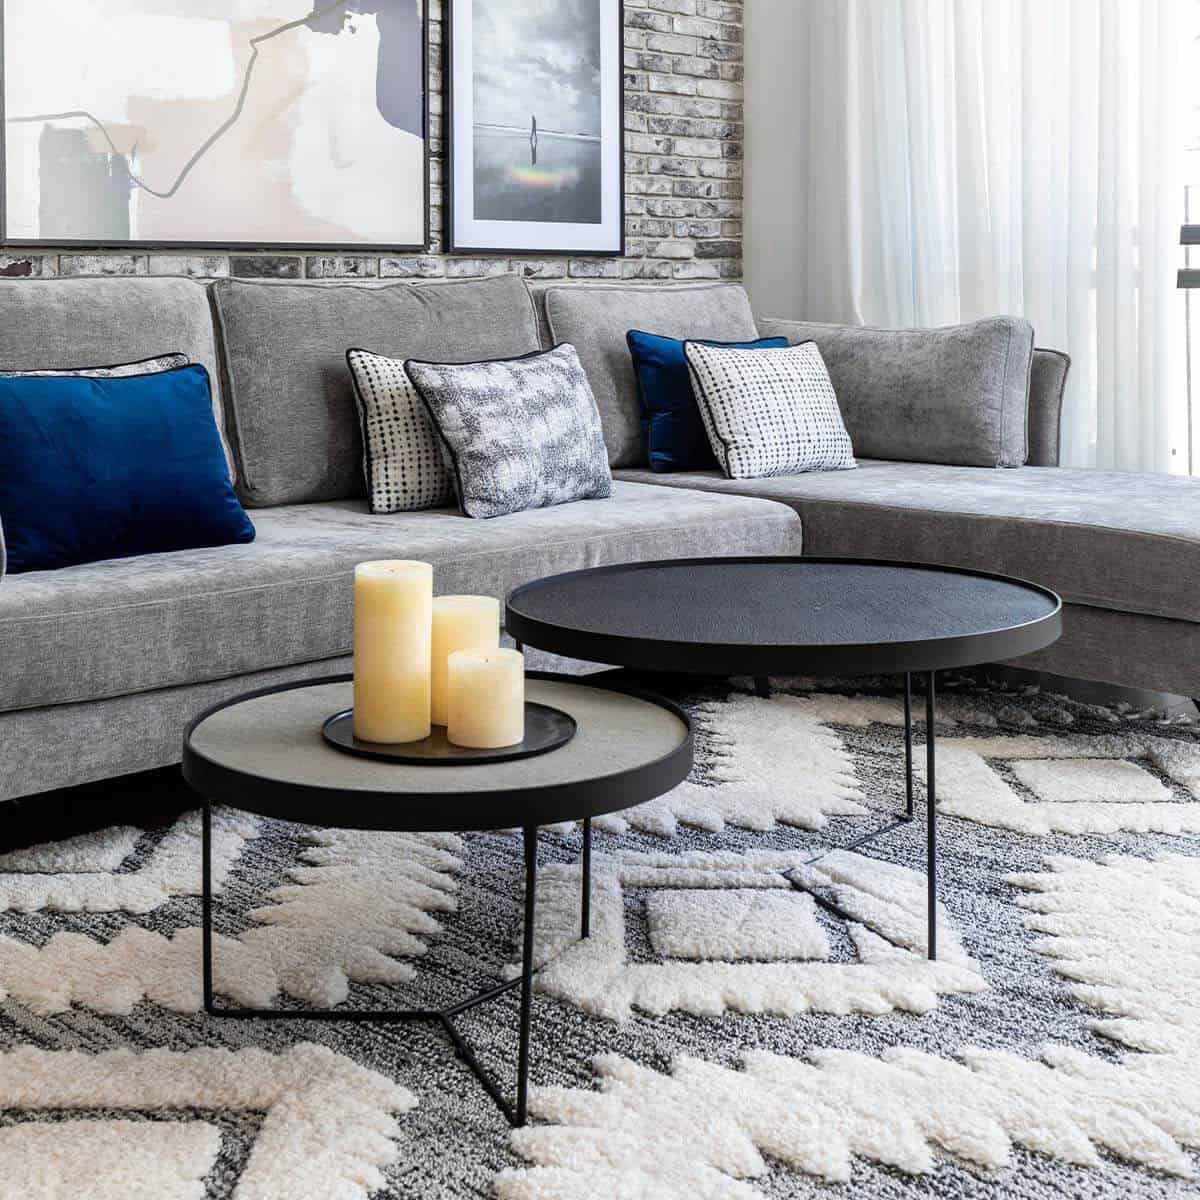 שטיח אטלס 09 אפור עם פרנזים | השטיח האדום | עיצוב: רוני שני פלדשטיין, צילום: אורית ארנון 